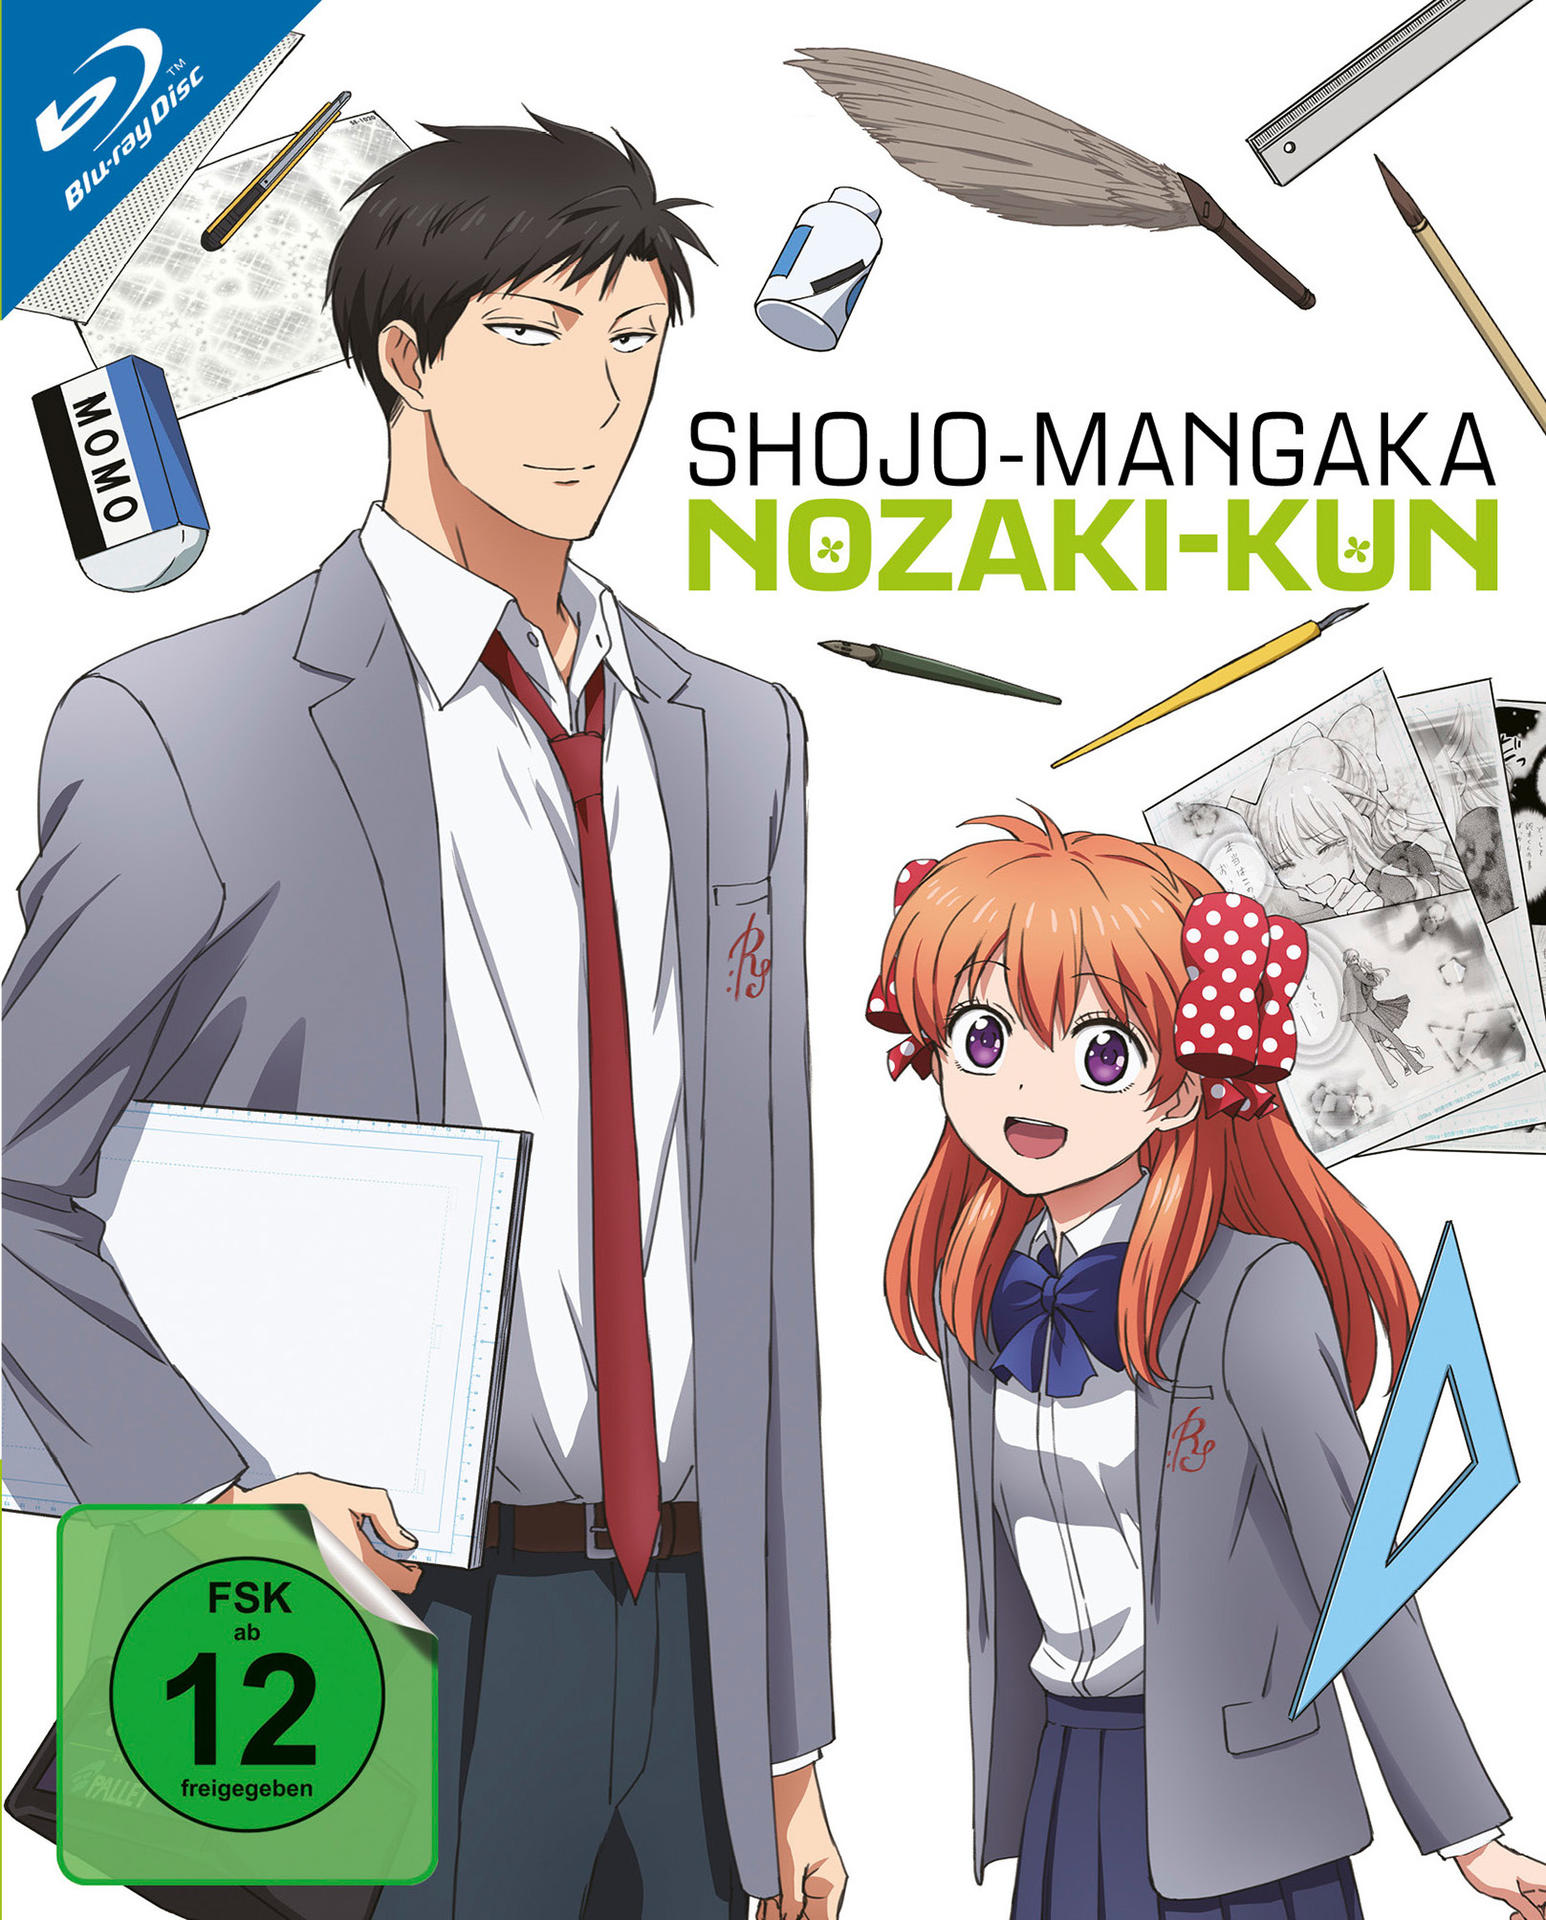 Shojo-Mangaka Nozaki-Kun Vol. 1 (Ep. 1-4) Blu-ray